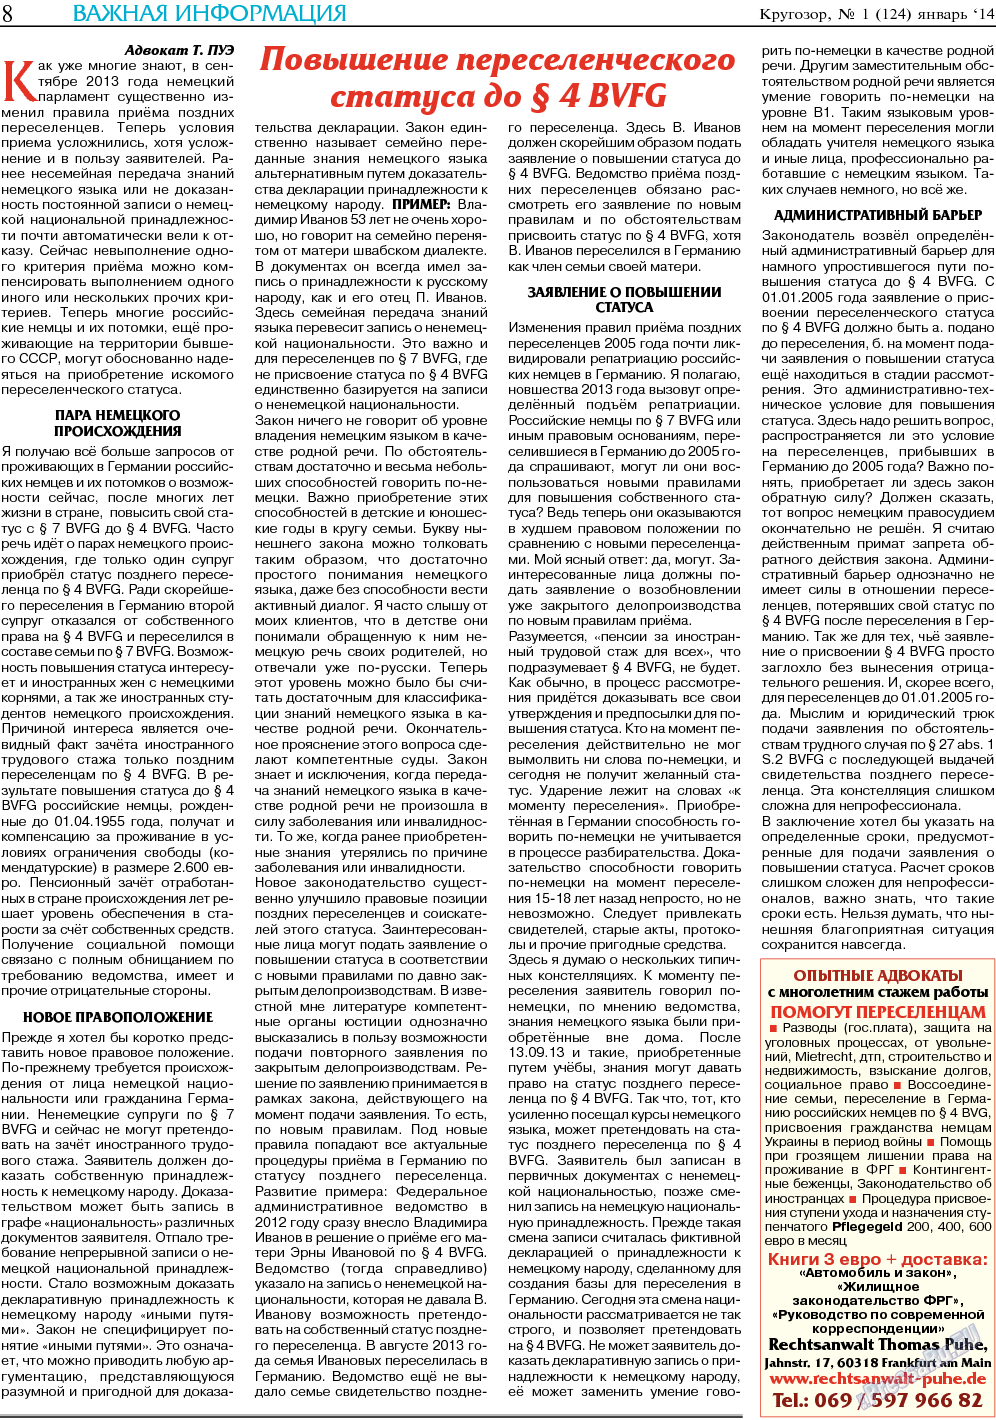 Кругозор, газета. 2014 №1 стр.8